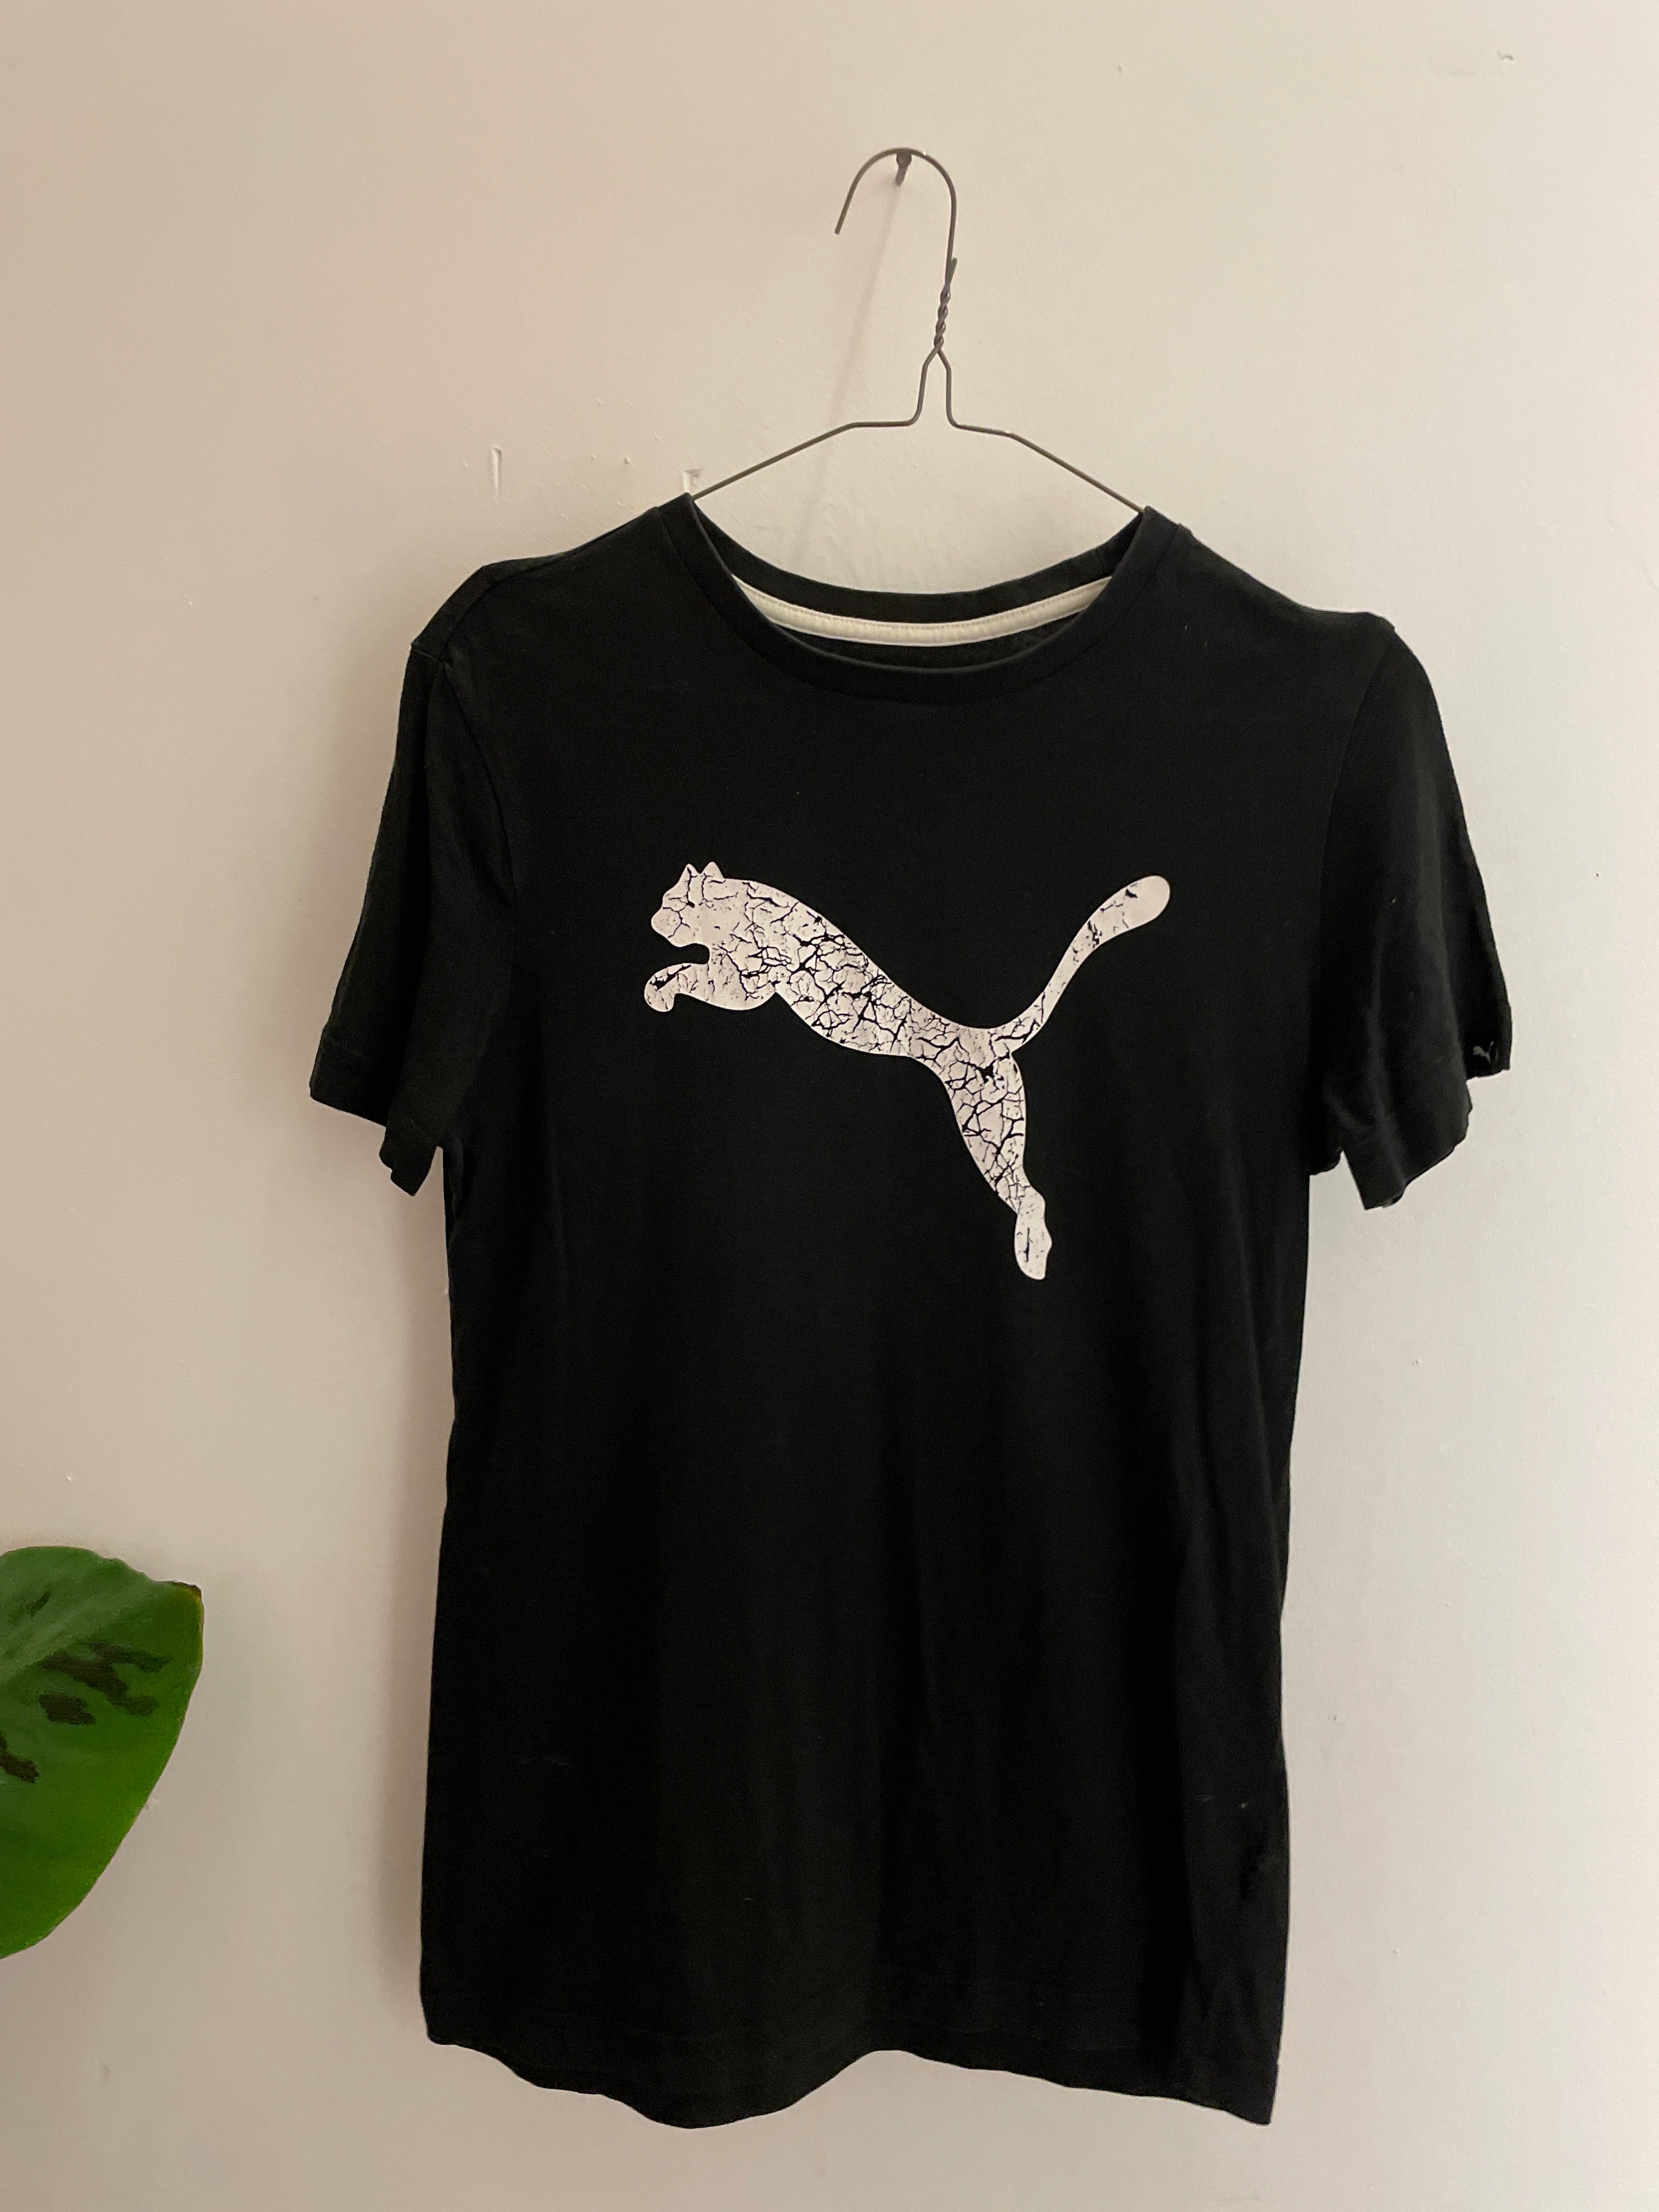 Vintage black puma authentic cotton tshirt size L